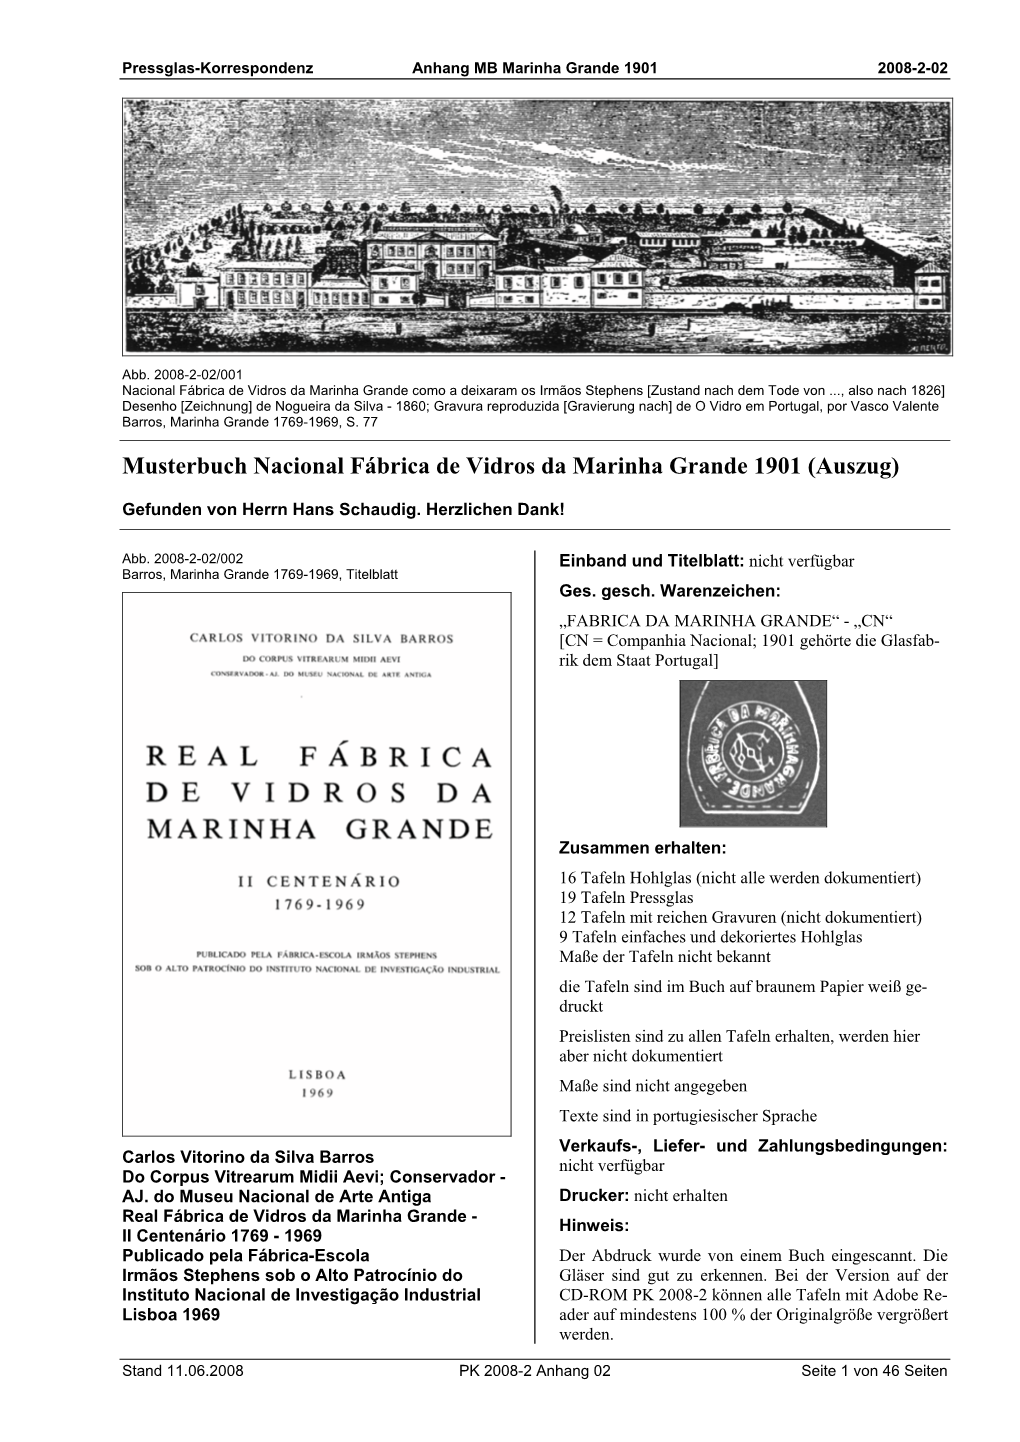 Musterbuch Nacional Fábrica De Vidros Da Marinha Grande 1901 (Auszug)